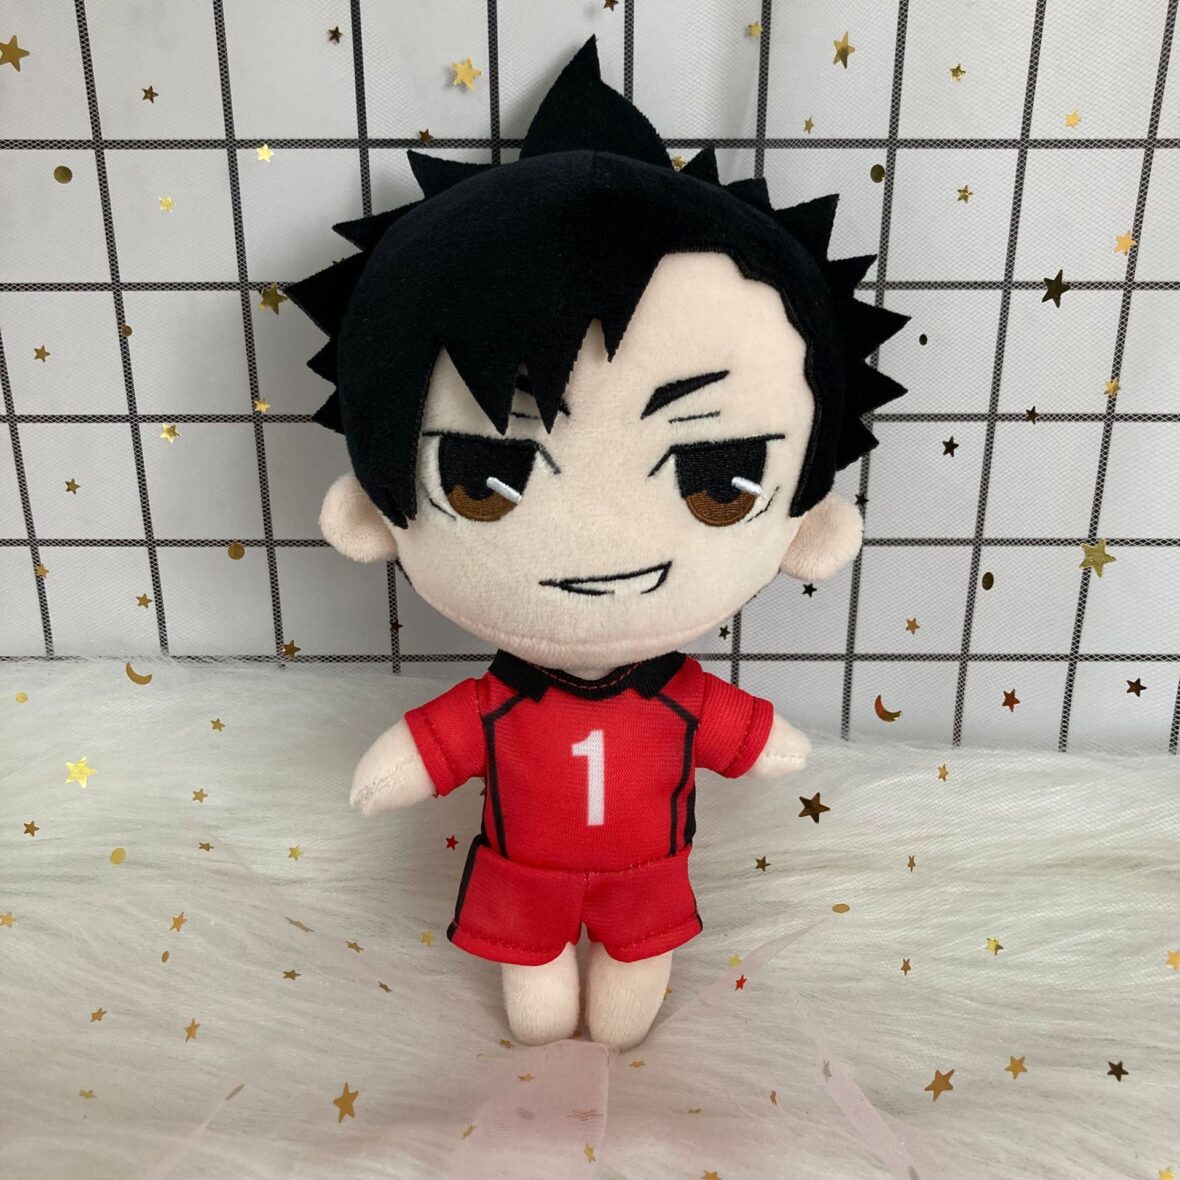 Haikyuu Anime Tetsuro Kuroo Stuffed Plush Toy